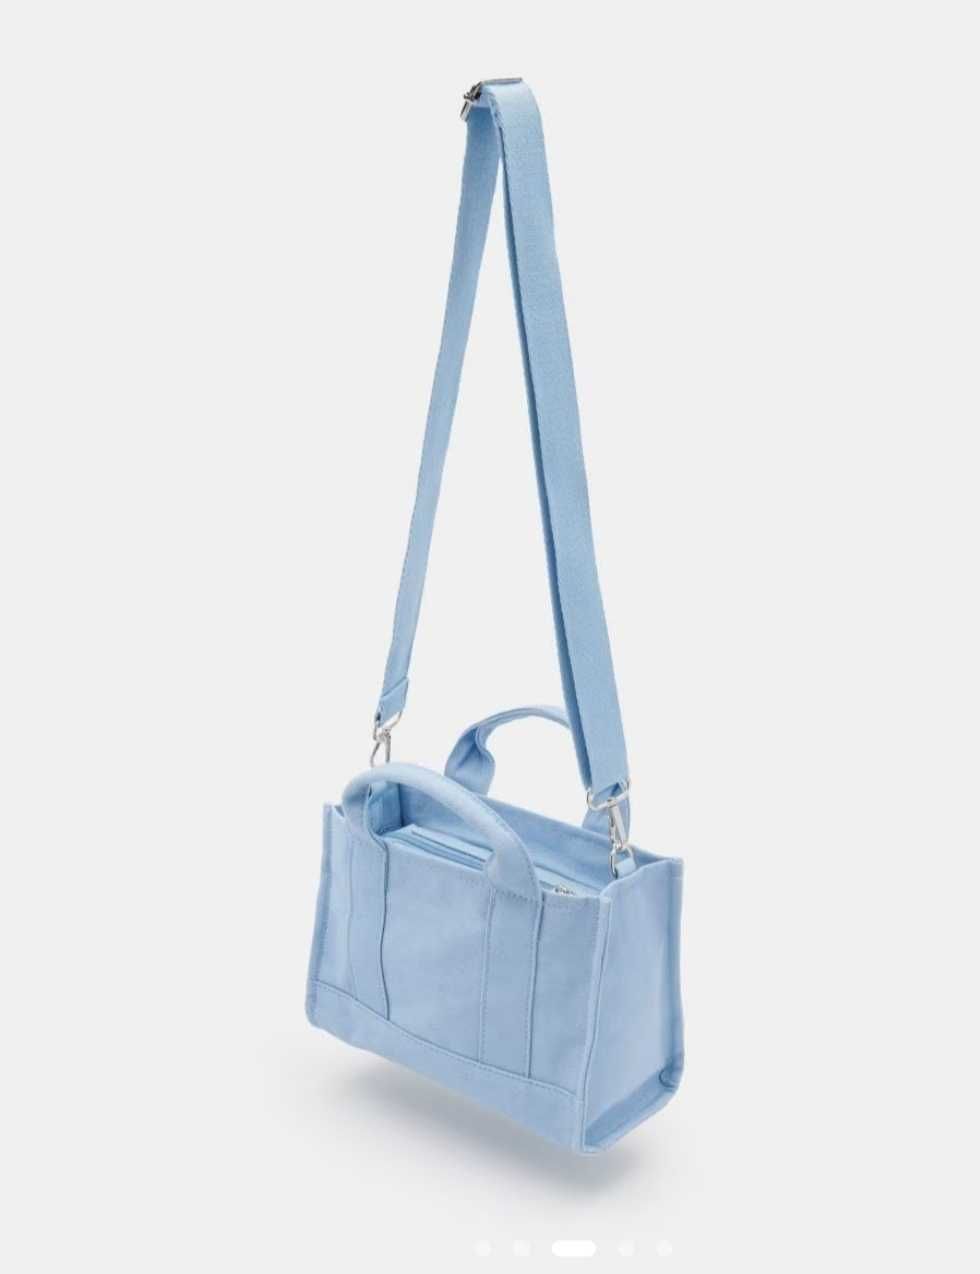 Малка светло синя дамска чанта Sinsay, тип тоте/ tote, от 100% памук